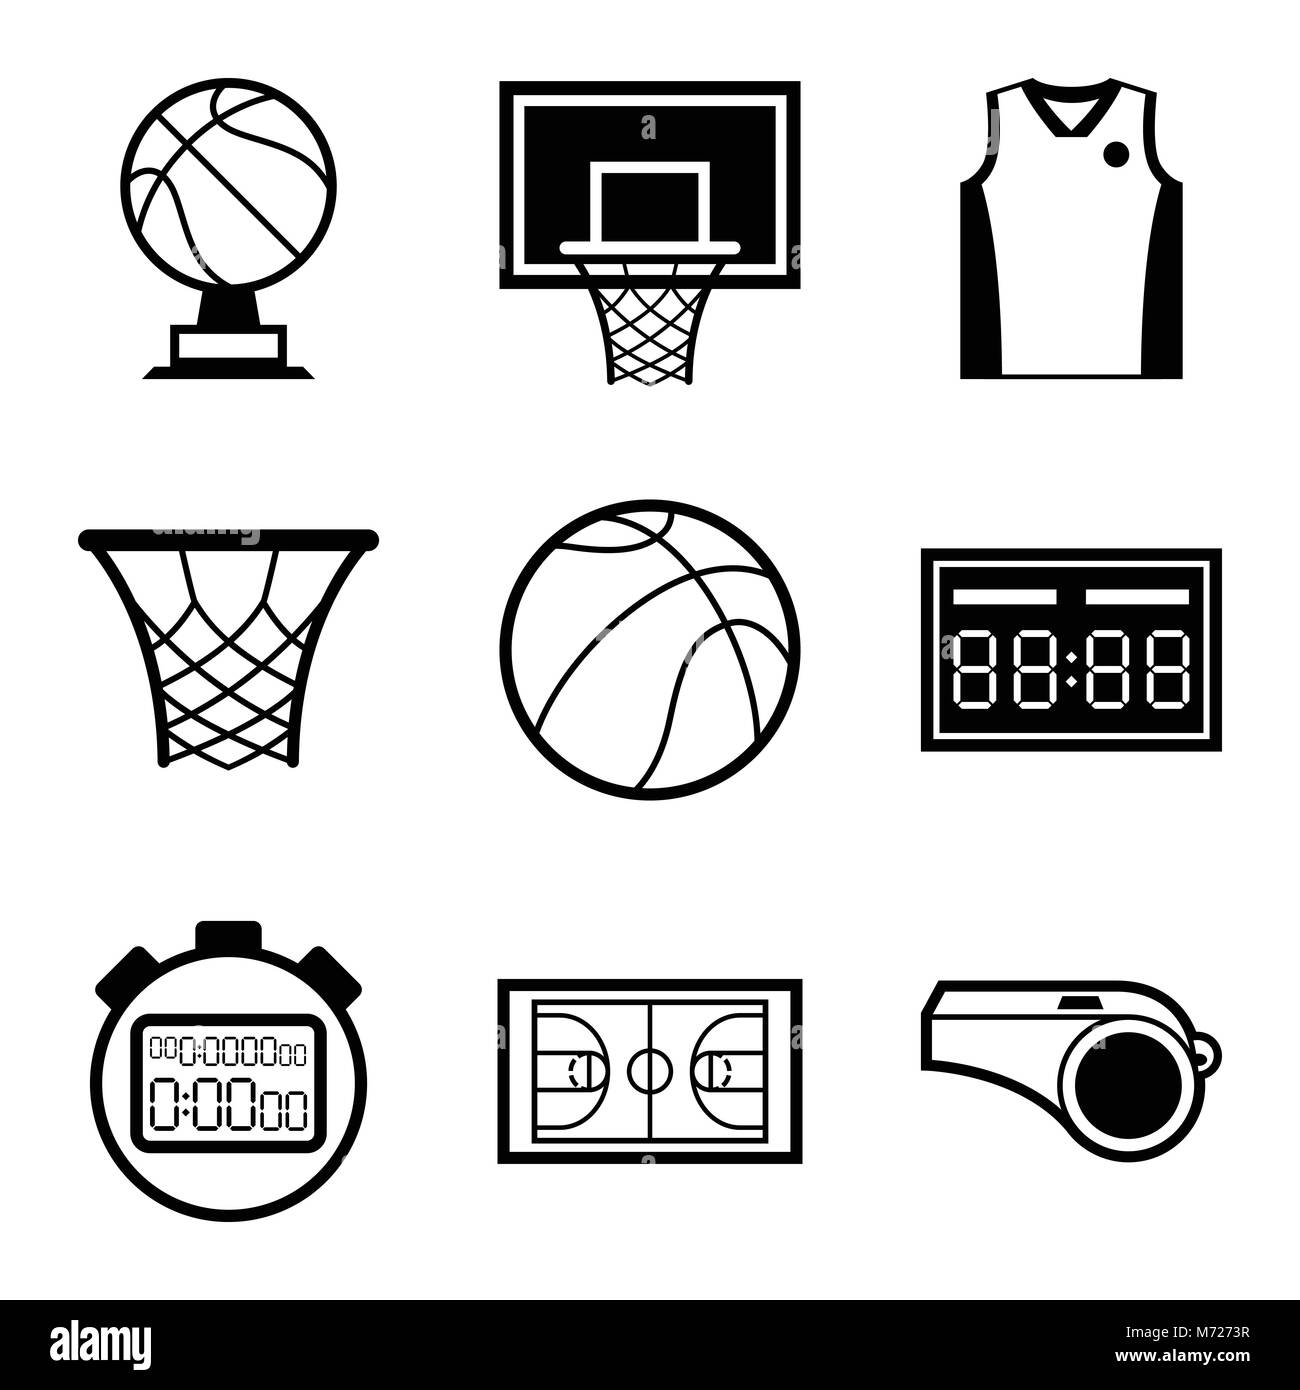 La pallacanestro icon set in flat uno stile di design Illustrazione Vettoriale